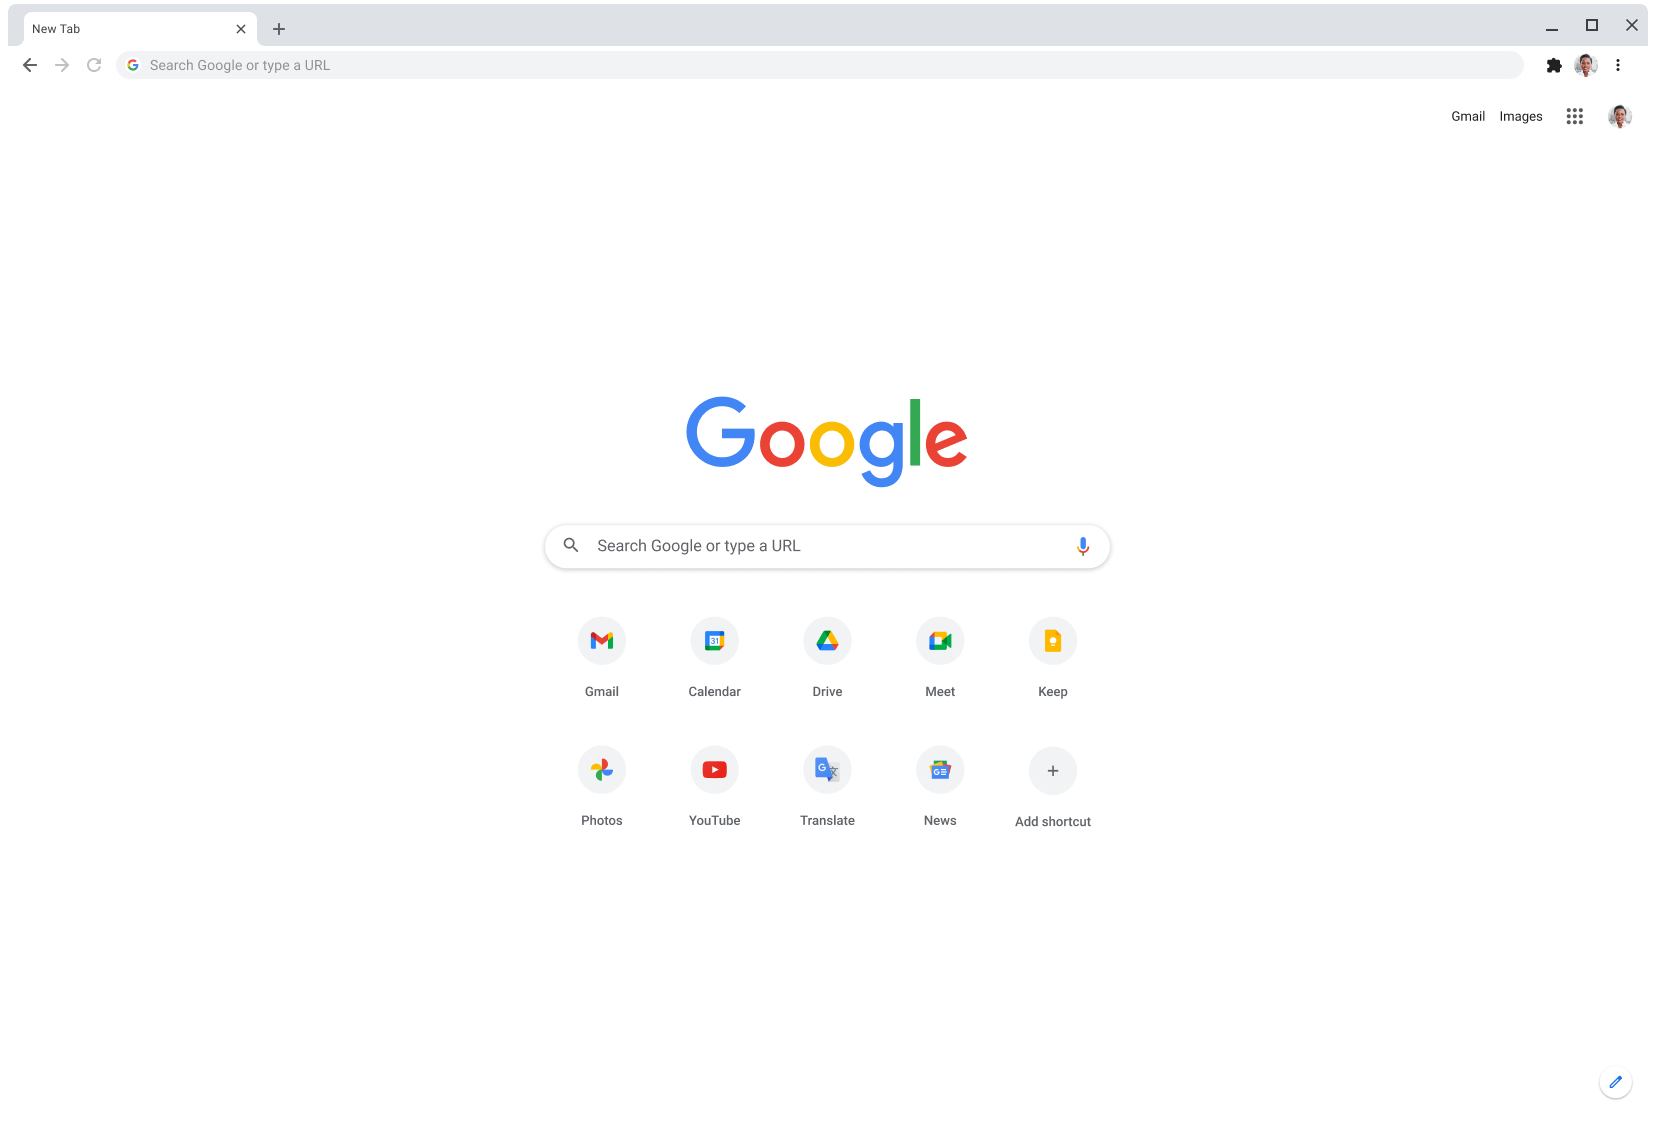 顯示 Google.com 的 Chrome 瀏覽器視窗。